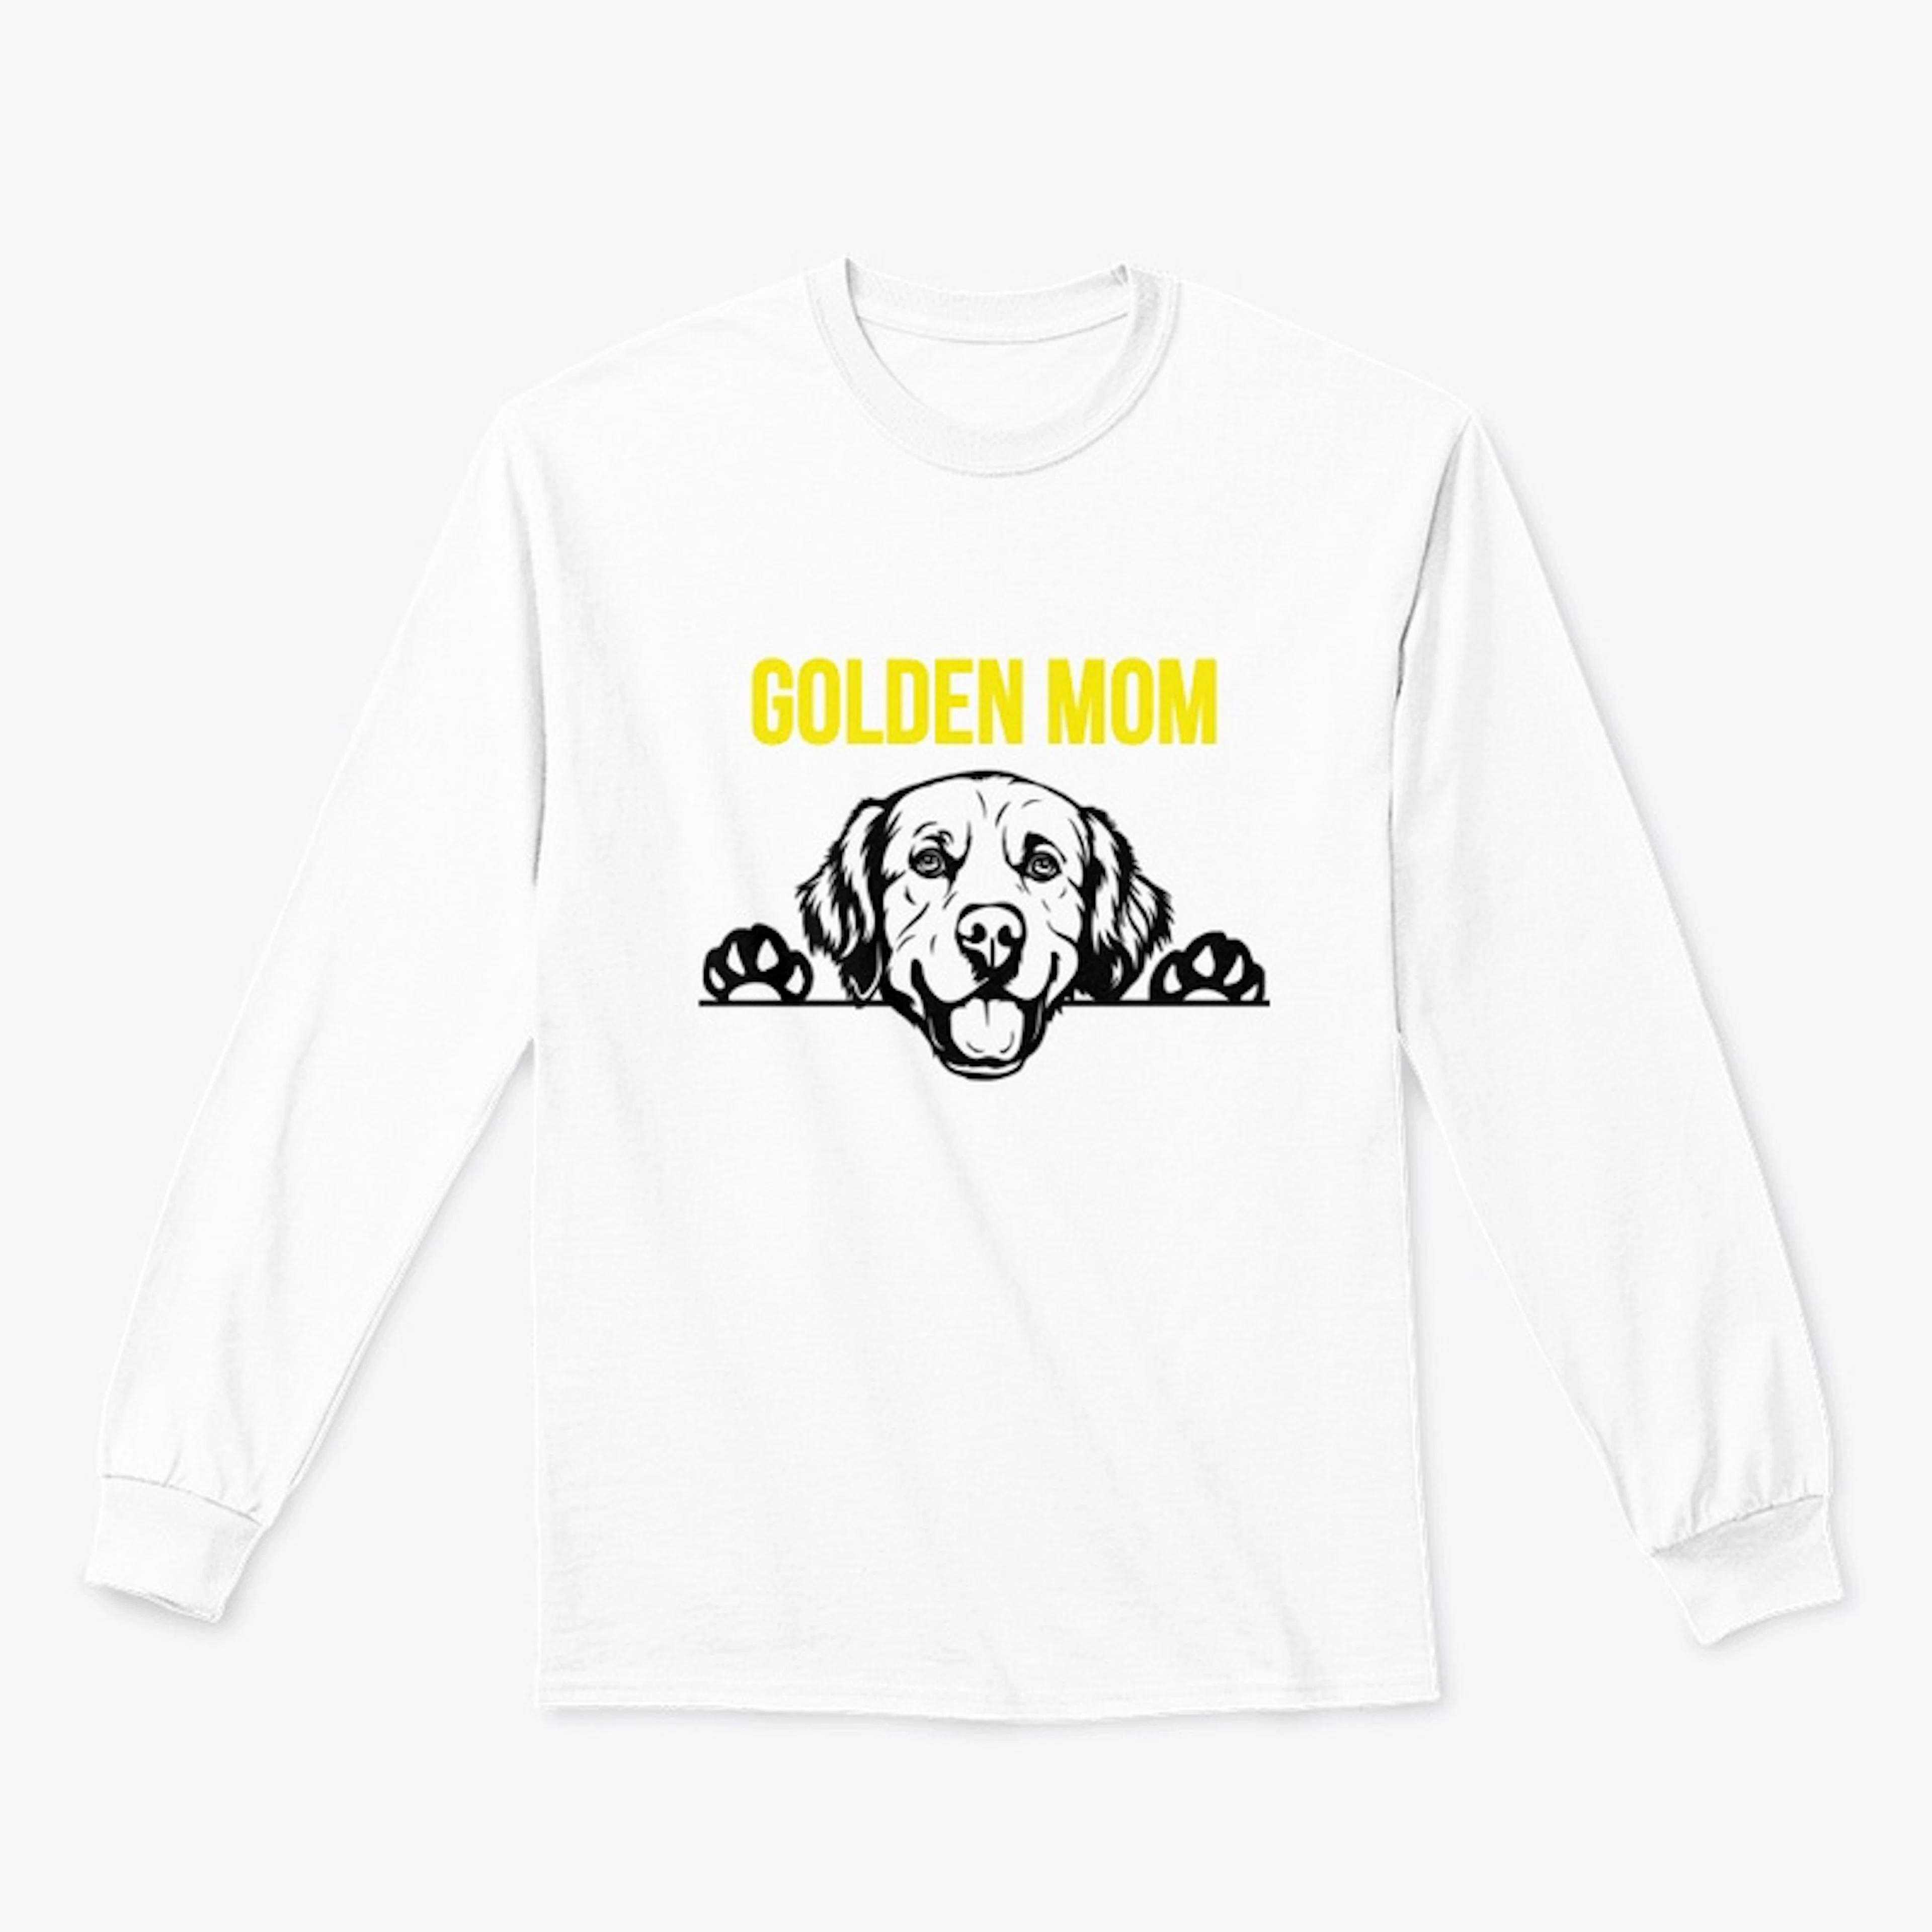 GOLDEN MOM